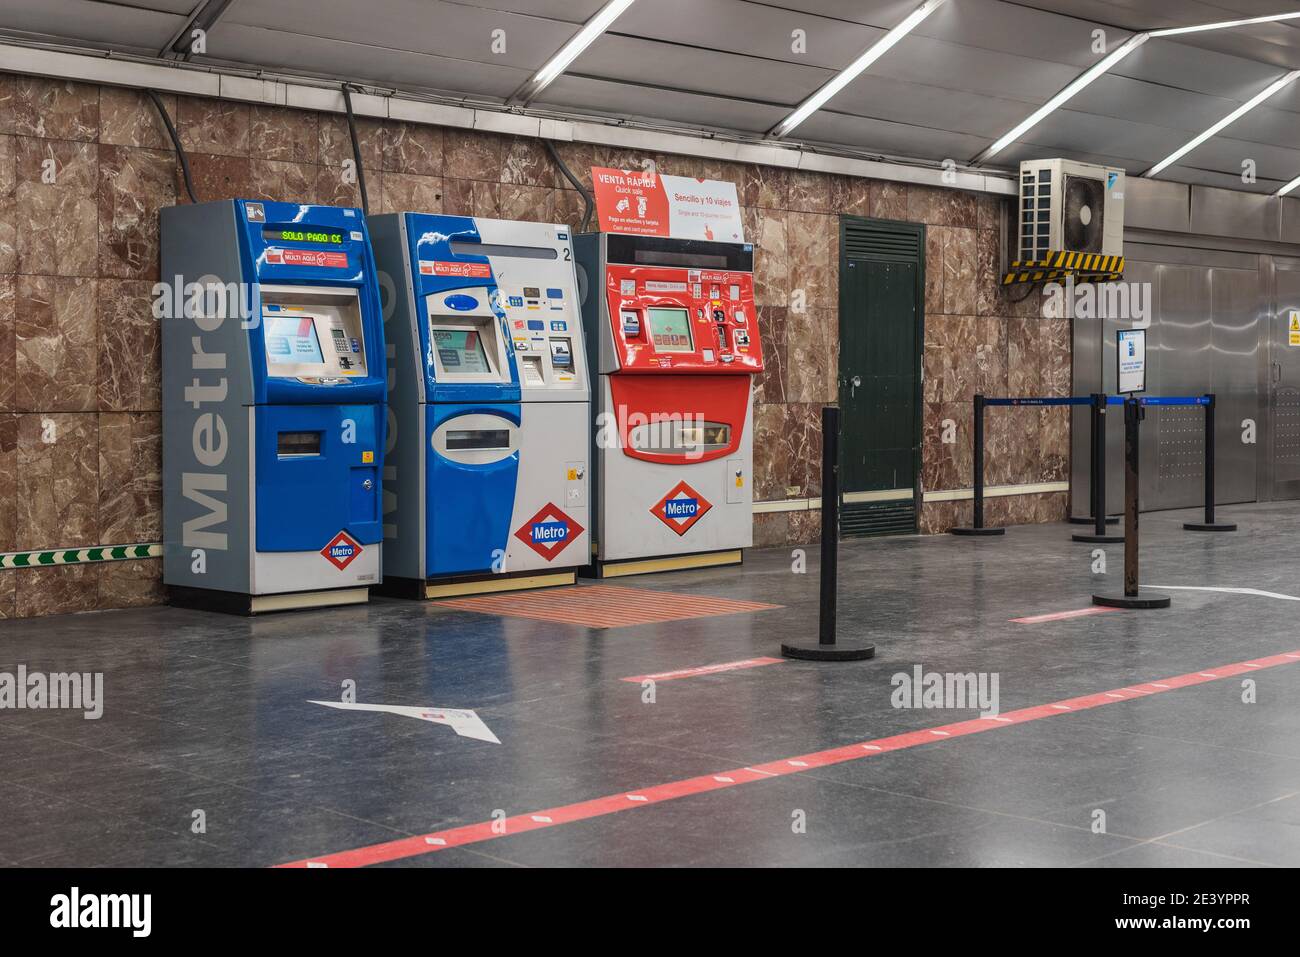 MDRID, SPAIN - Jan 20, 2021: Maquinas modernas para los tickets en el metro de Madrid. Stock Photo